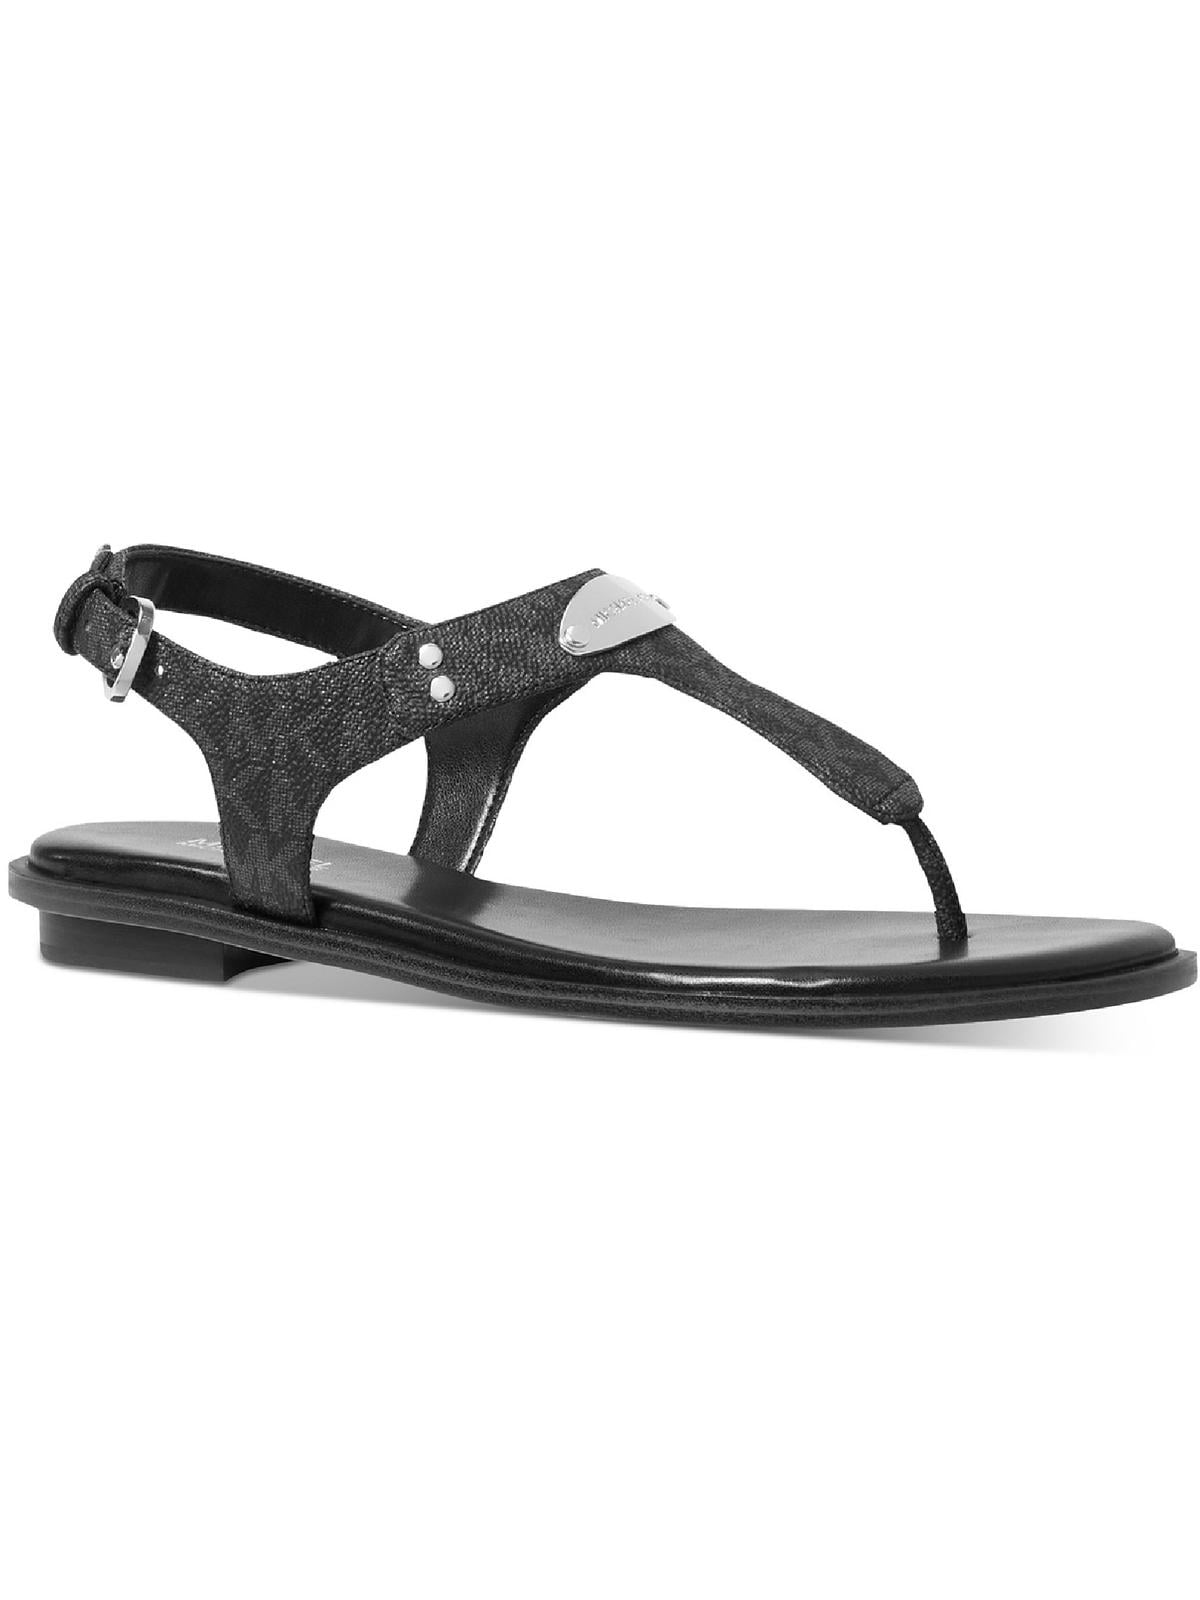 Louis Vuitton Women Black Sandals Suede Double Strap High Wedge Shoes Sz EU  39.5